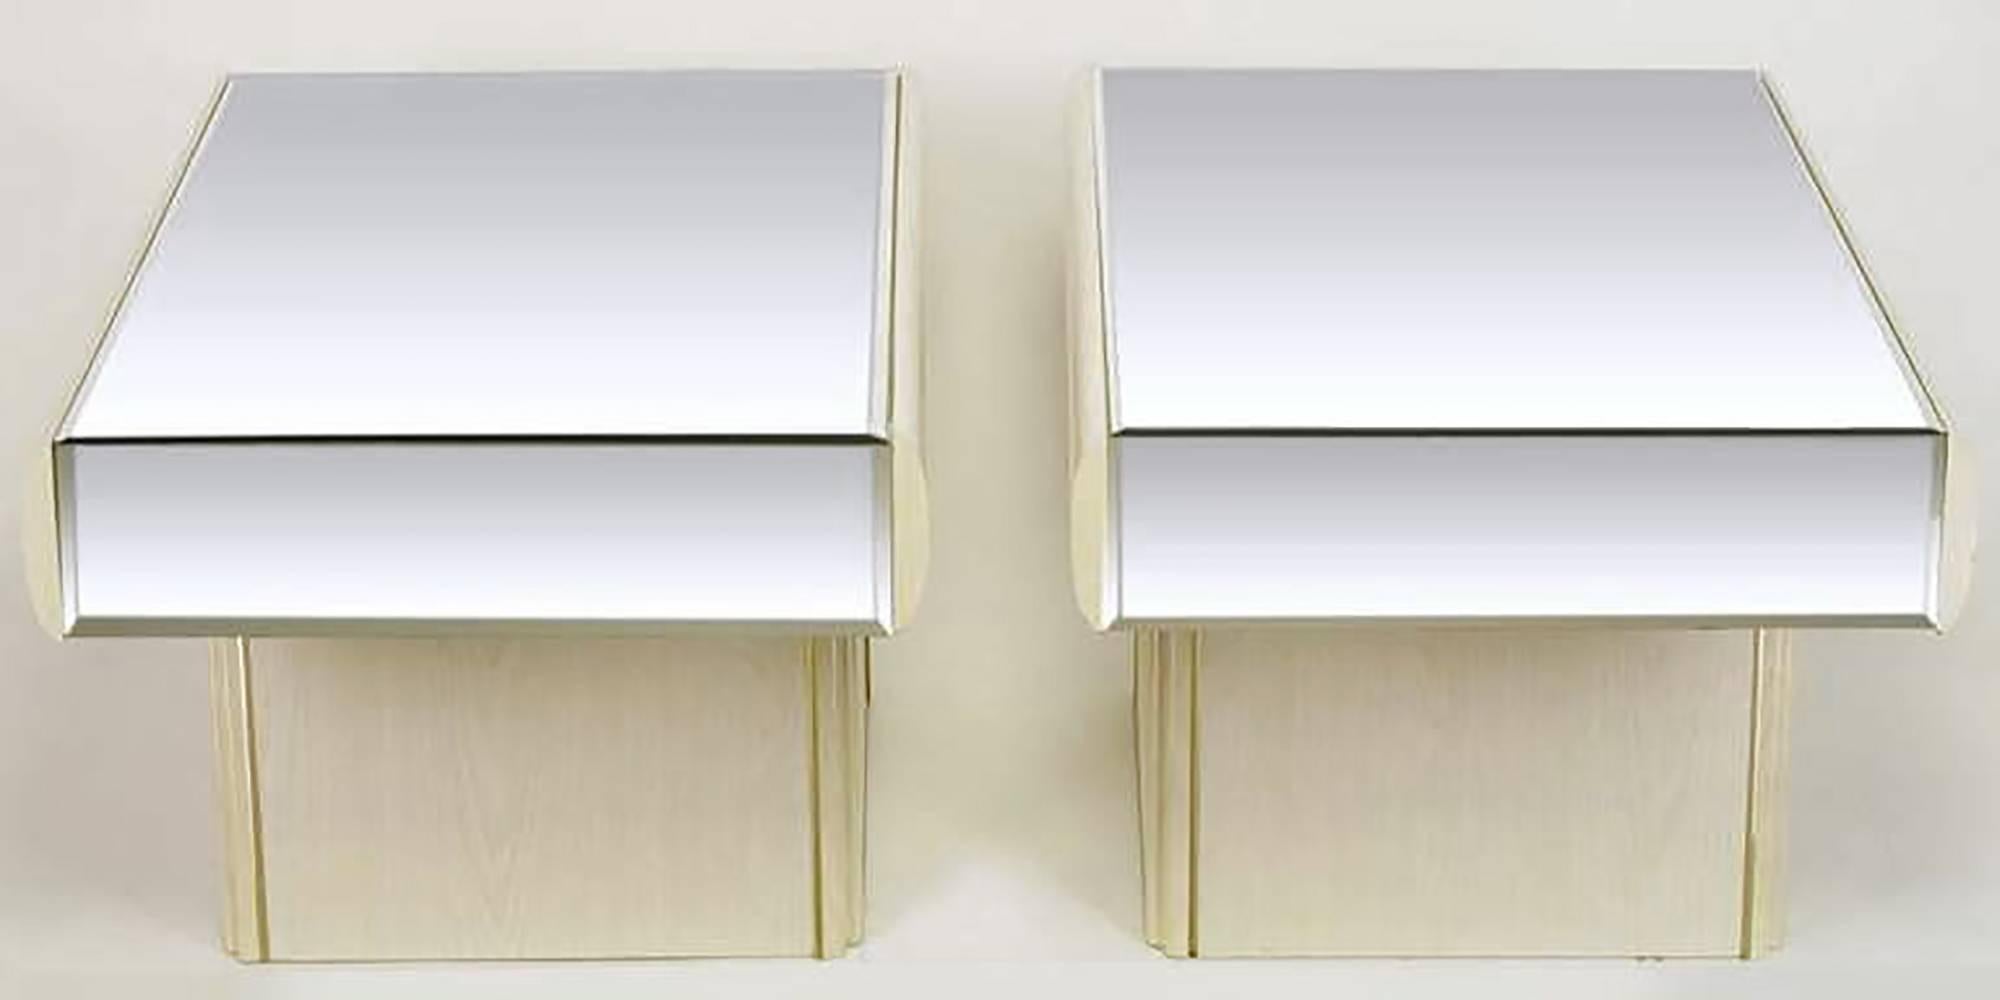 Zwei freitragende italienische Beistelltische aus weiß glasierter Eiche mit Spiegeln (Postmoderne)